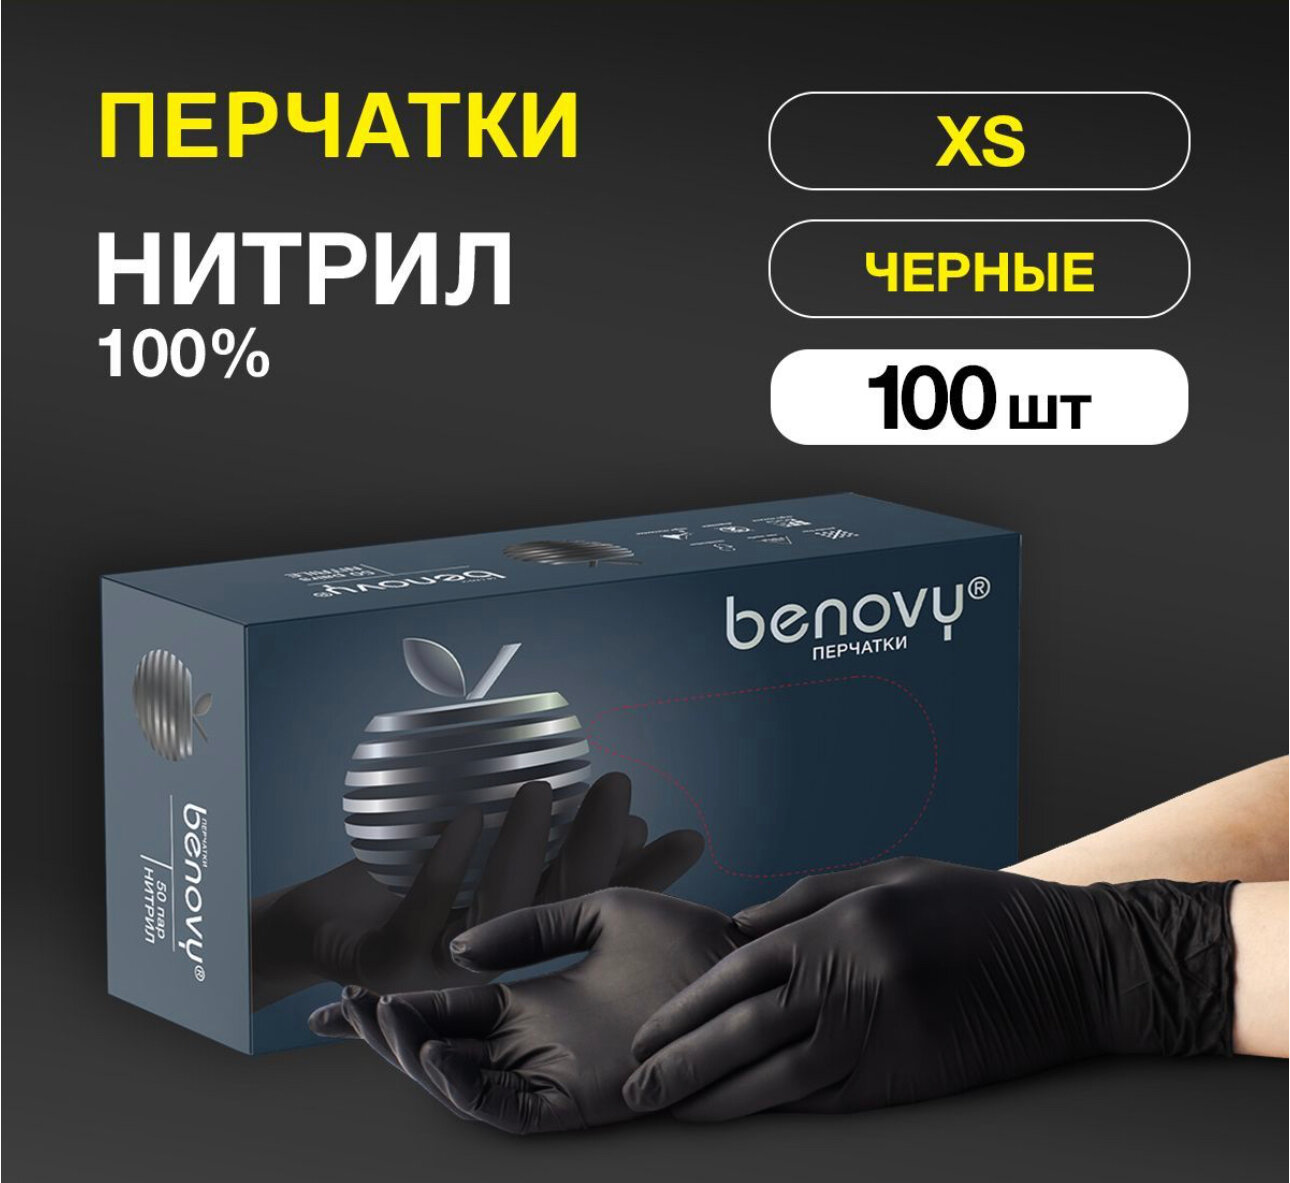 Перчатки нитриловые черные Benovy (50) пар, одноразовые, все размеры, бинови, Бенови XS